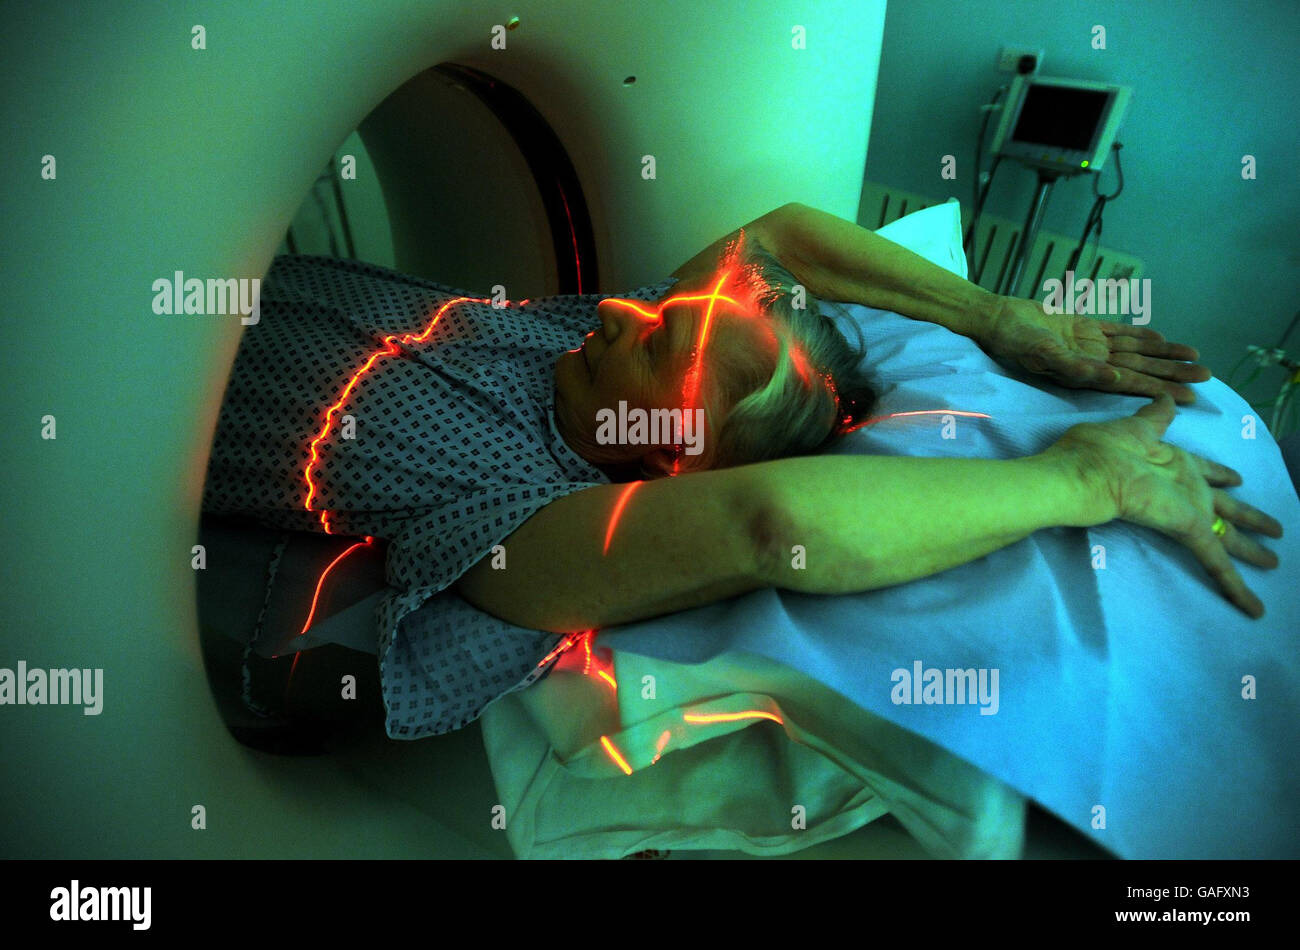 La imagen de un paciente femenino en el hospital y la salud se coloca a través de un escáner de TC (tomografía computarizada) que visualiza una sección transversal de todo el cuerpo, de la cabeza a los pies, para diagnosticar las afecciones médicas, en el University College Hospital, en el centro de Londres. Foto de stock